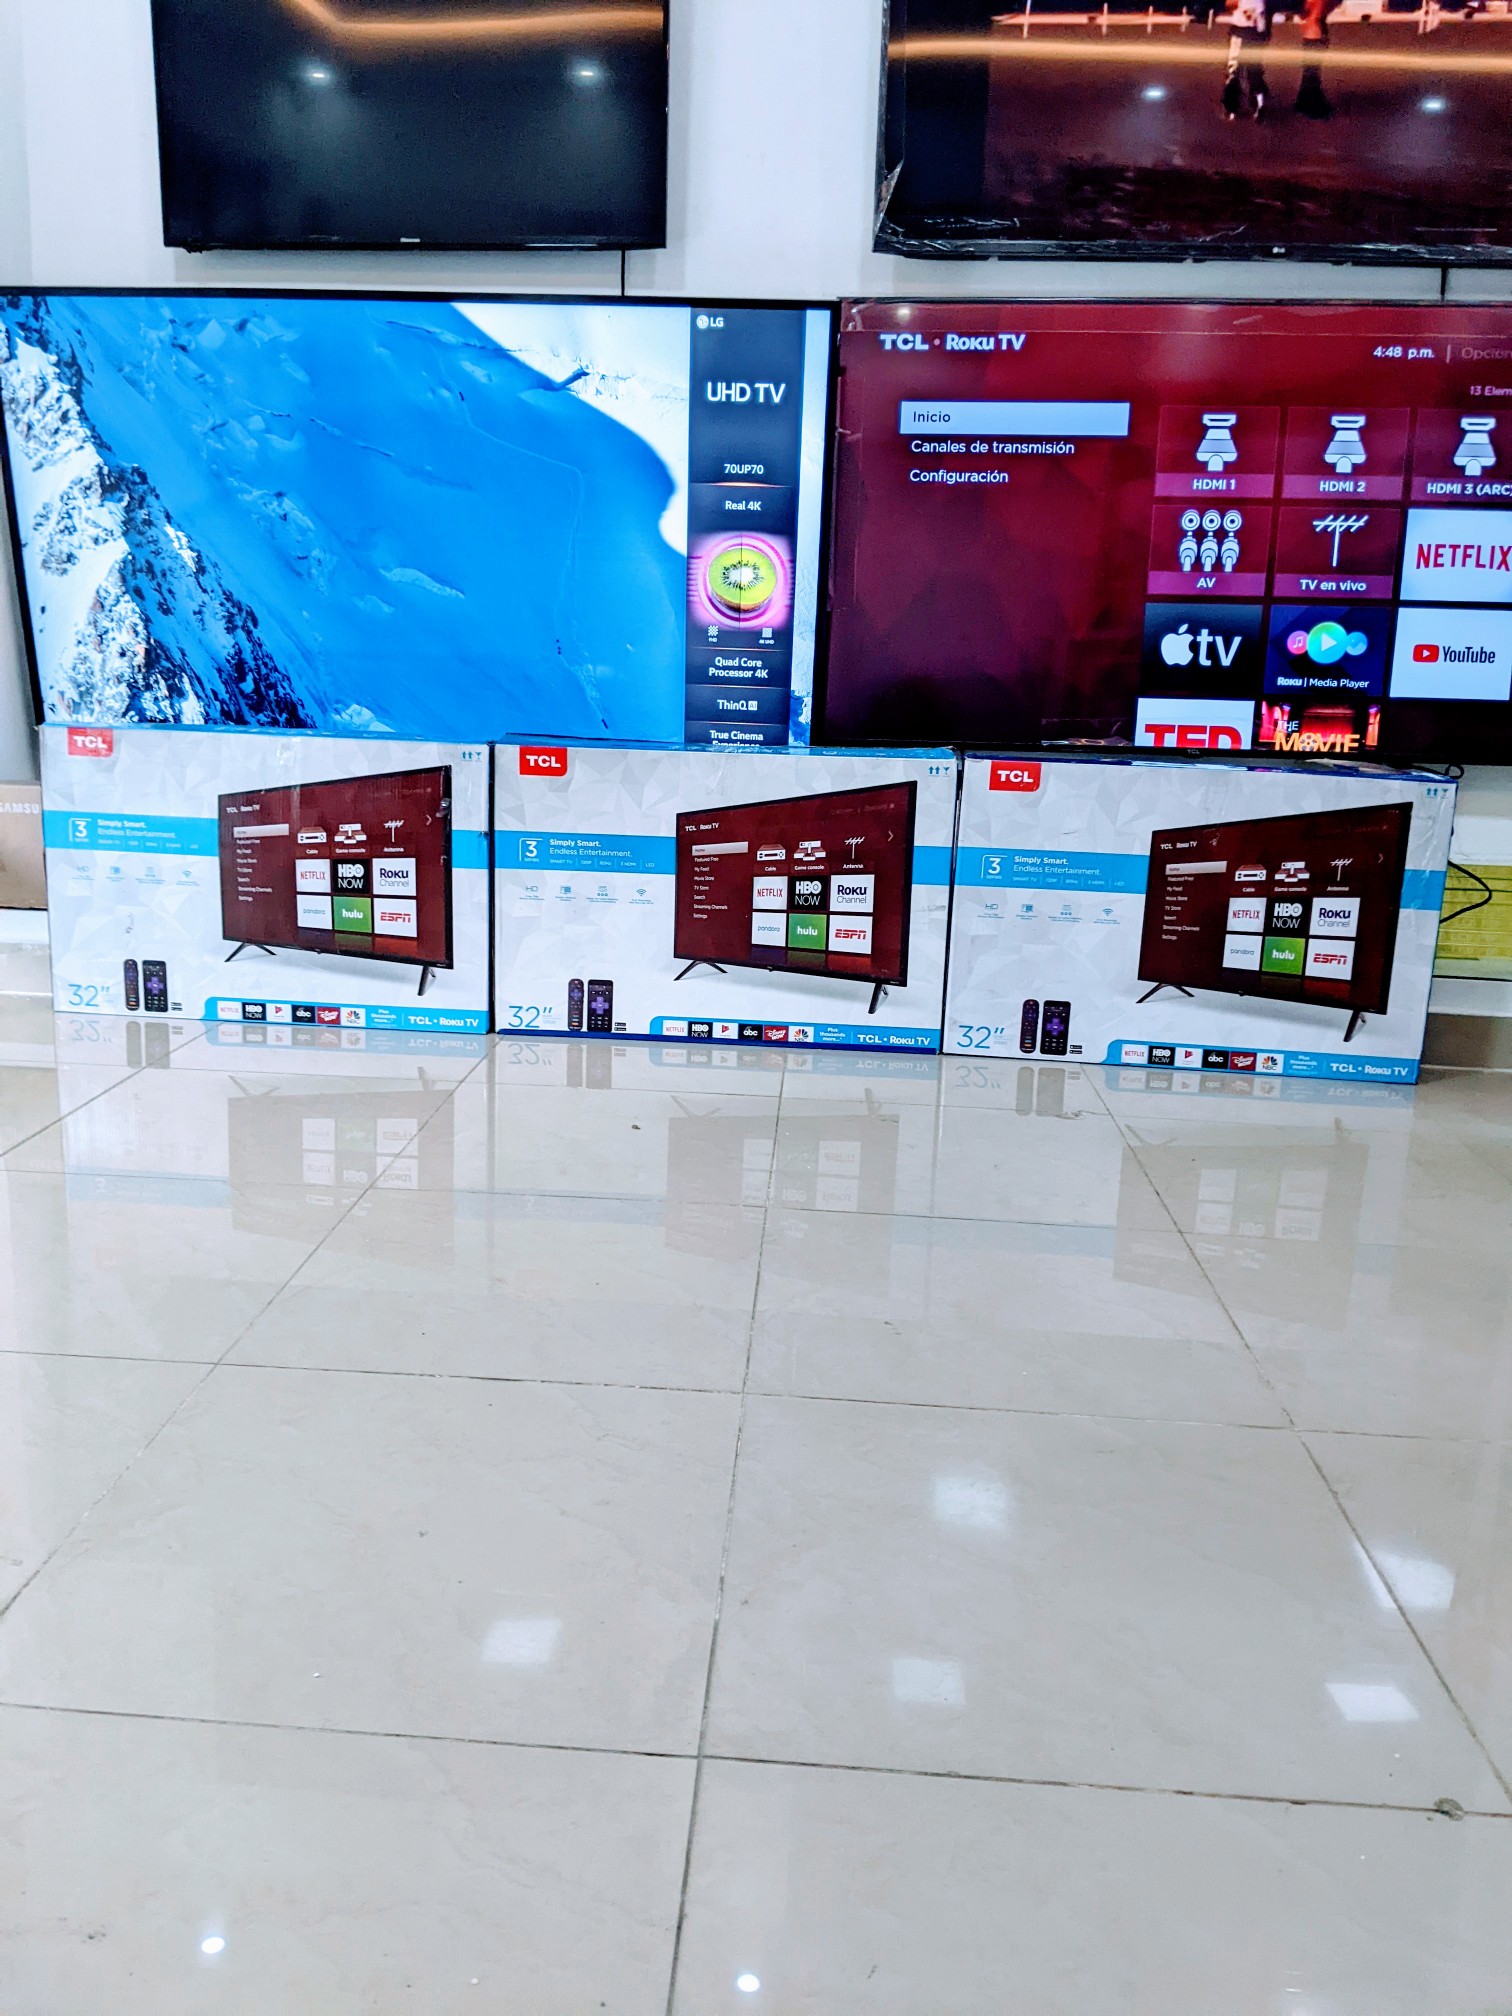 tv - Tv TCL 32 ROKU Smart tv 1 año de garantía. Somos tienda física